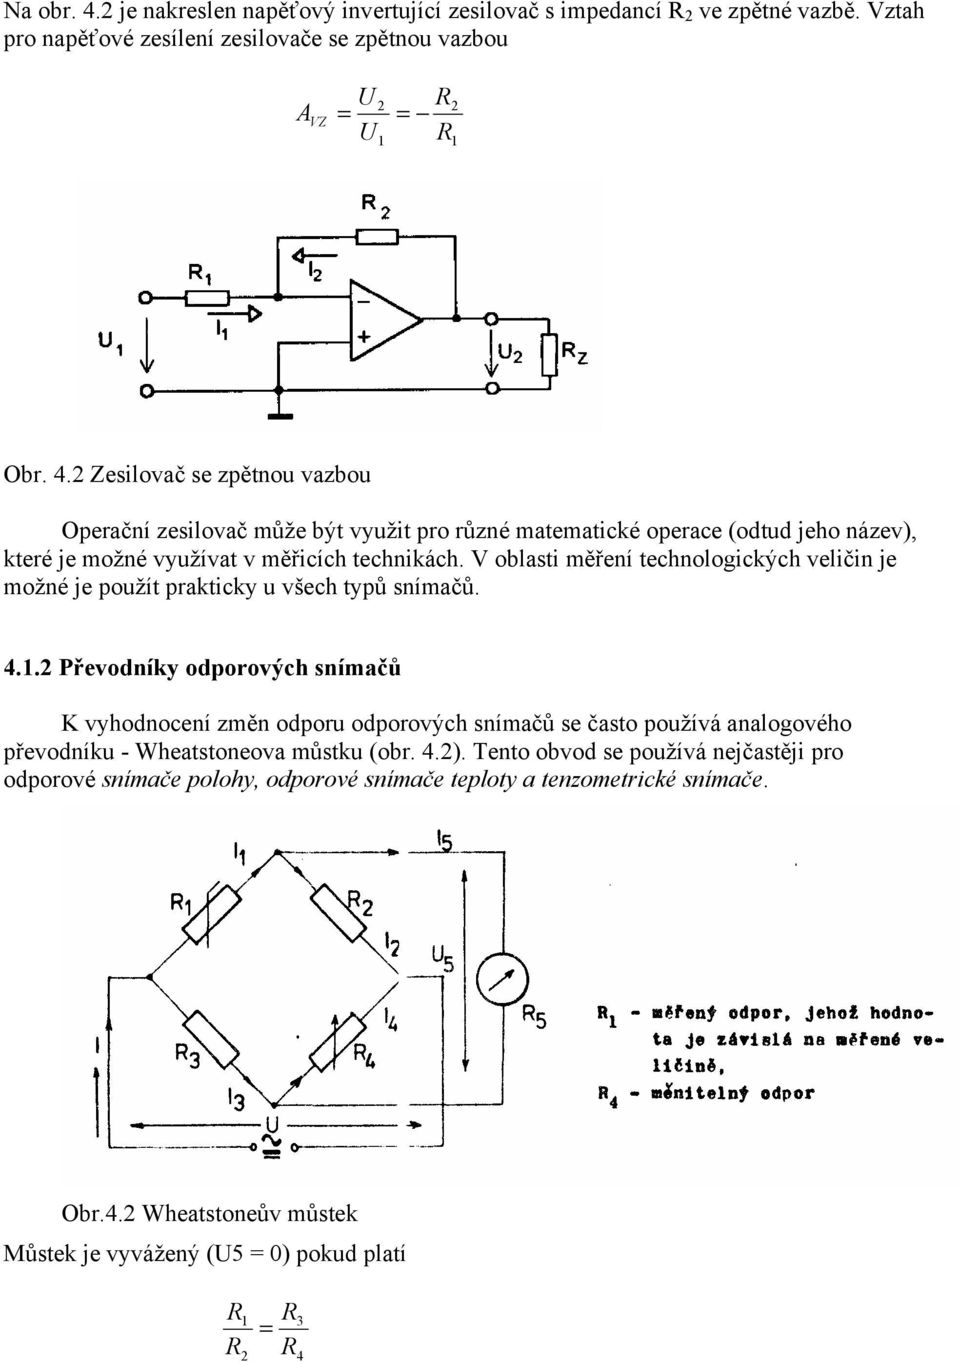 . Převodníky odporových snímačů K vyhodnocení změn odporu odporových snímačů se často používá analogového převodníku - Wheatstoneova můstku (obr. 4.).